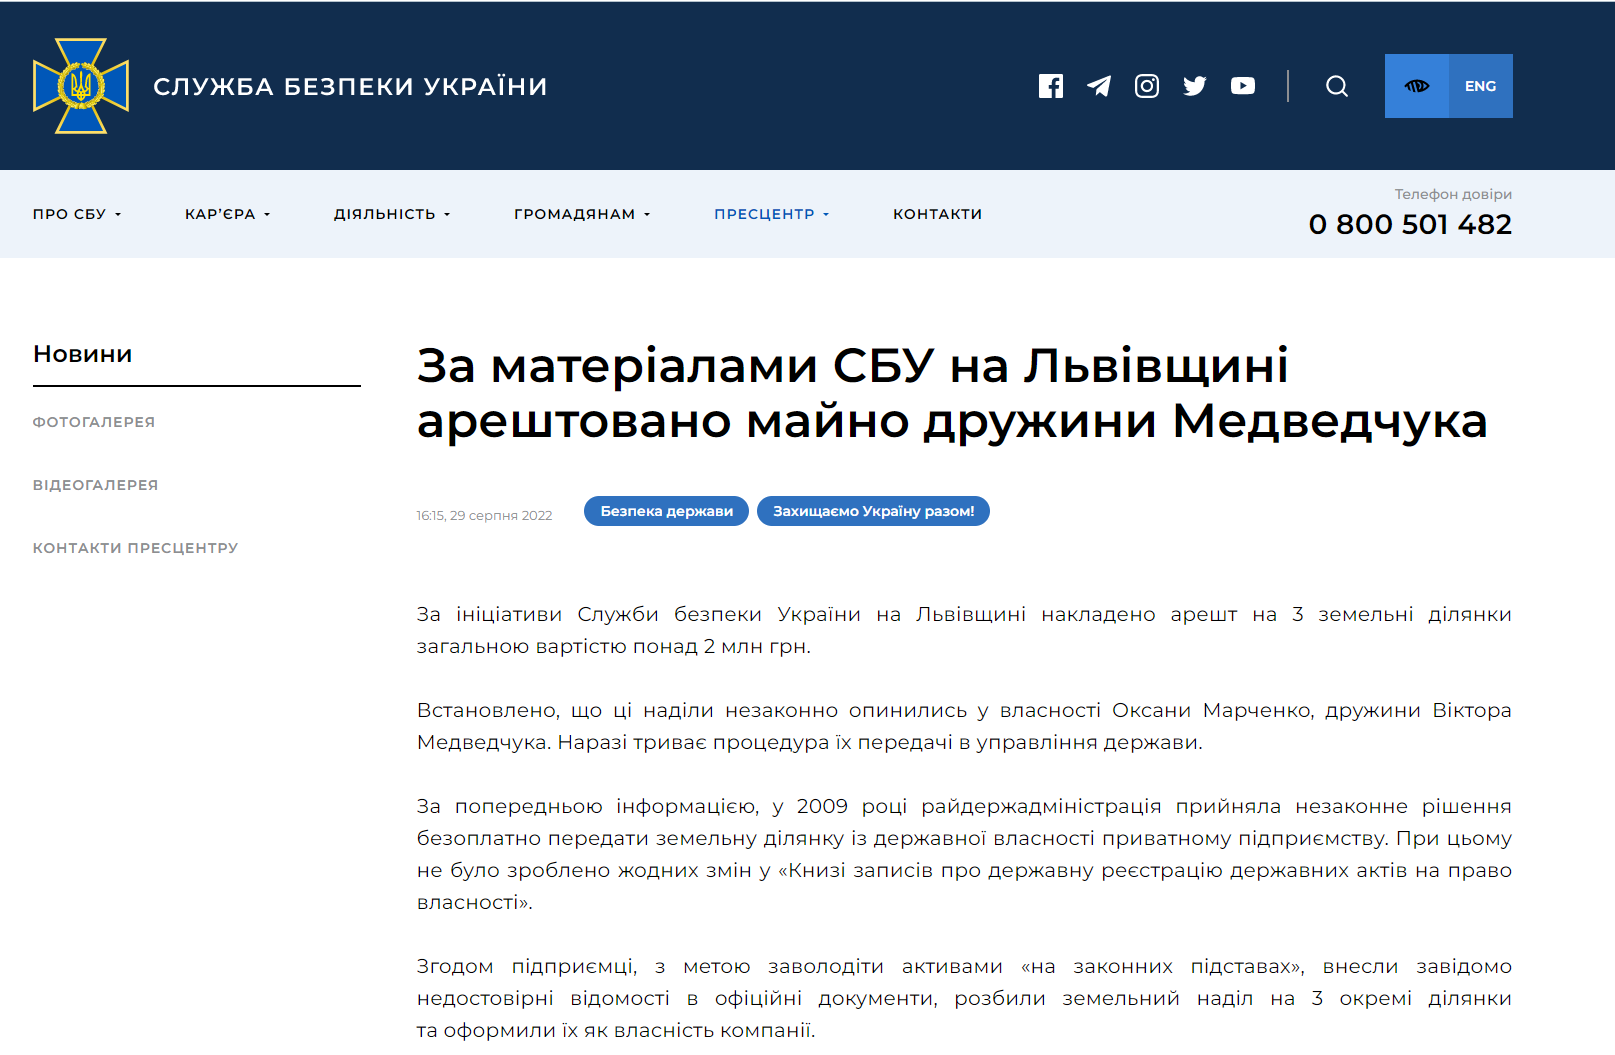 В СБУ сообщили об аресте трех земельных участка, принадлежащих жене Медведчука, Оксане Марченко. Участки были незаконно оформлены как собственность предприятия